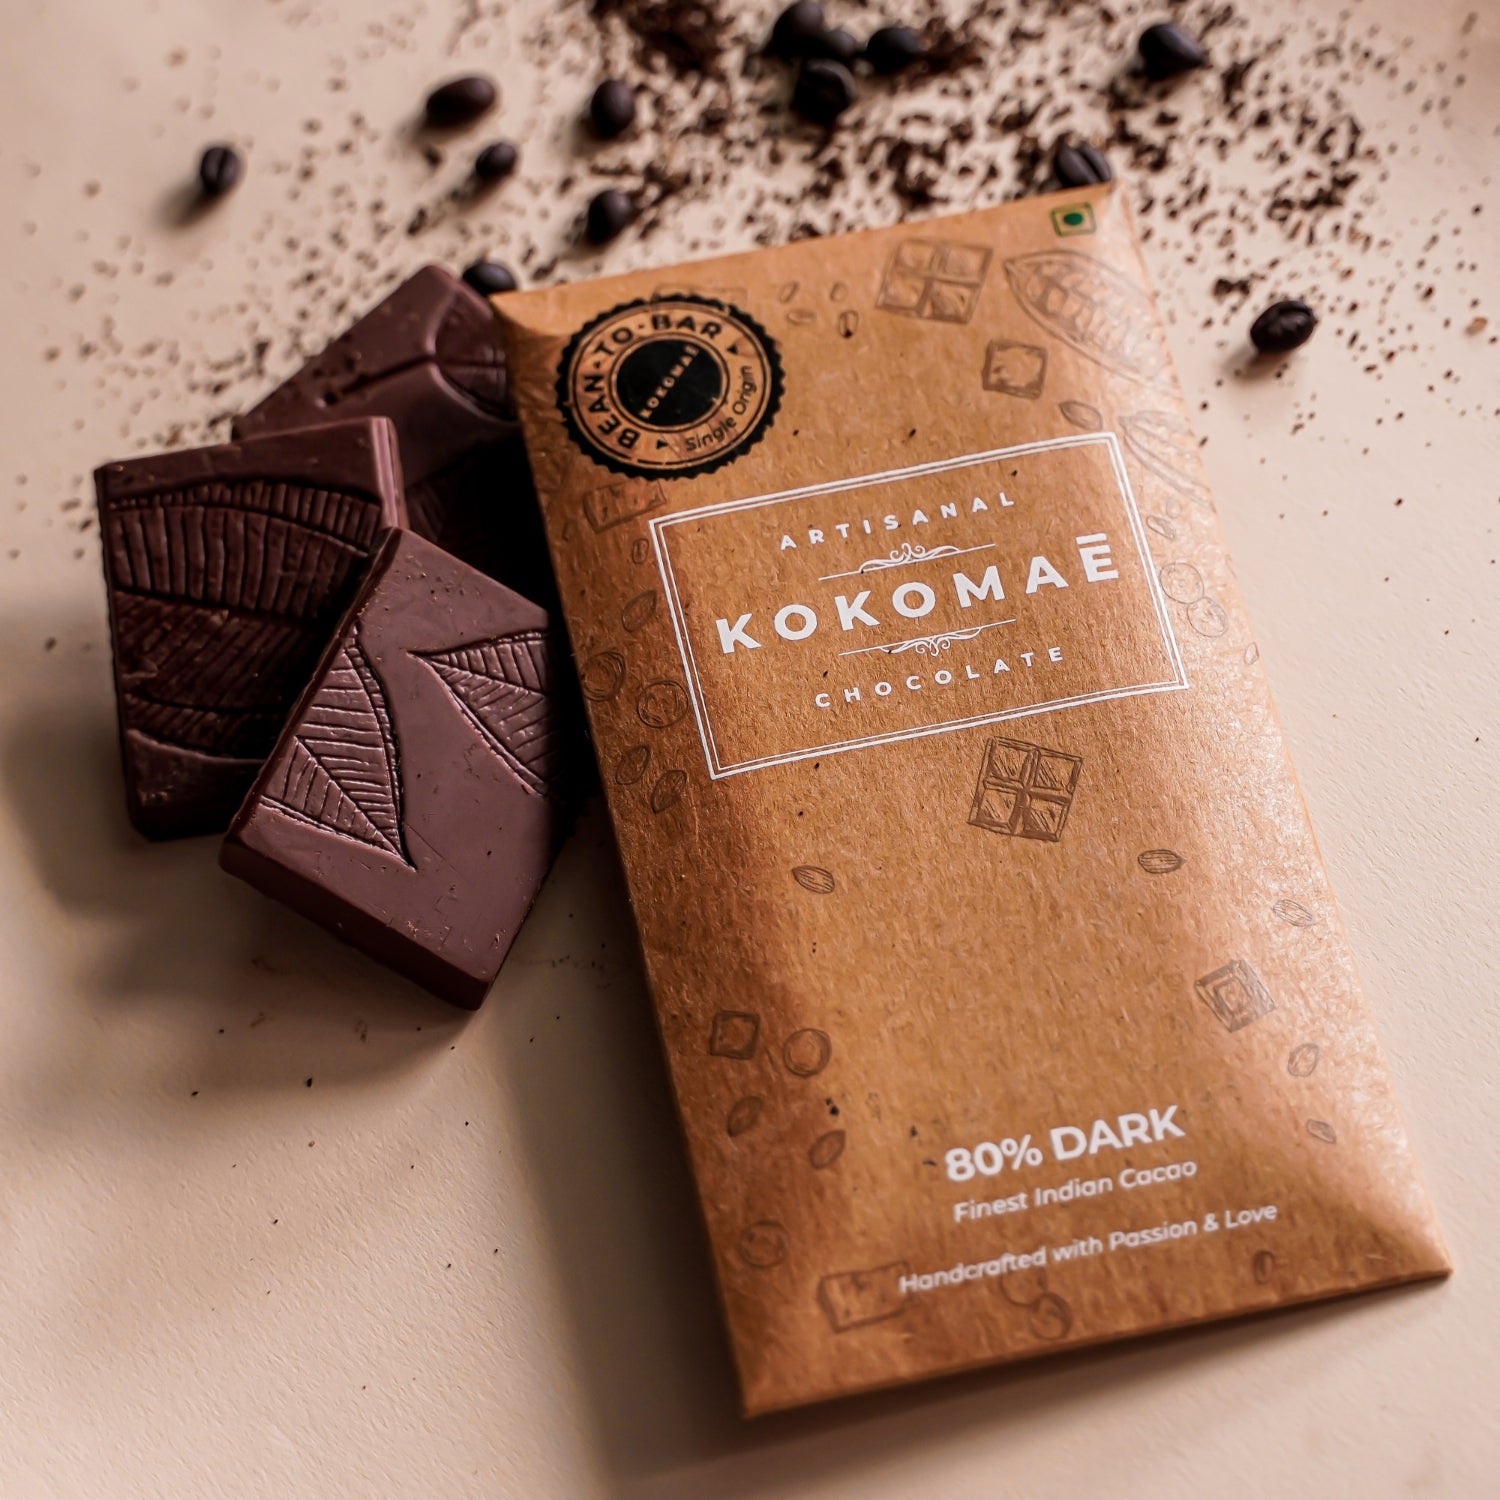 Kokomaē Bean to Bar Gift Hamper with Premium Couverture Pack of Five Exquisite Flavors like Hazelnut 60% Dark, 70% Dark, 80% Dark, Sea Salt, 75% Dark made of Finest Cocoa Beans from Idukki Region